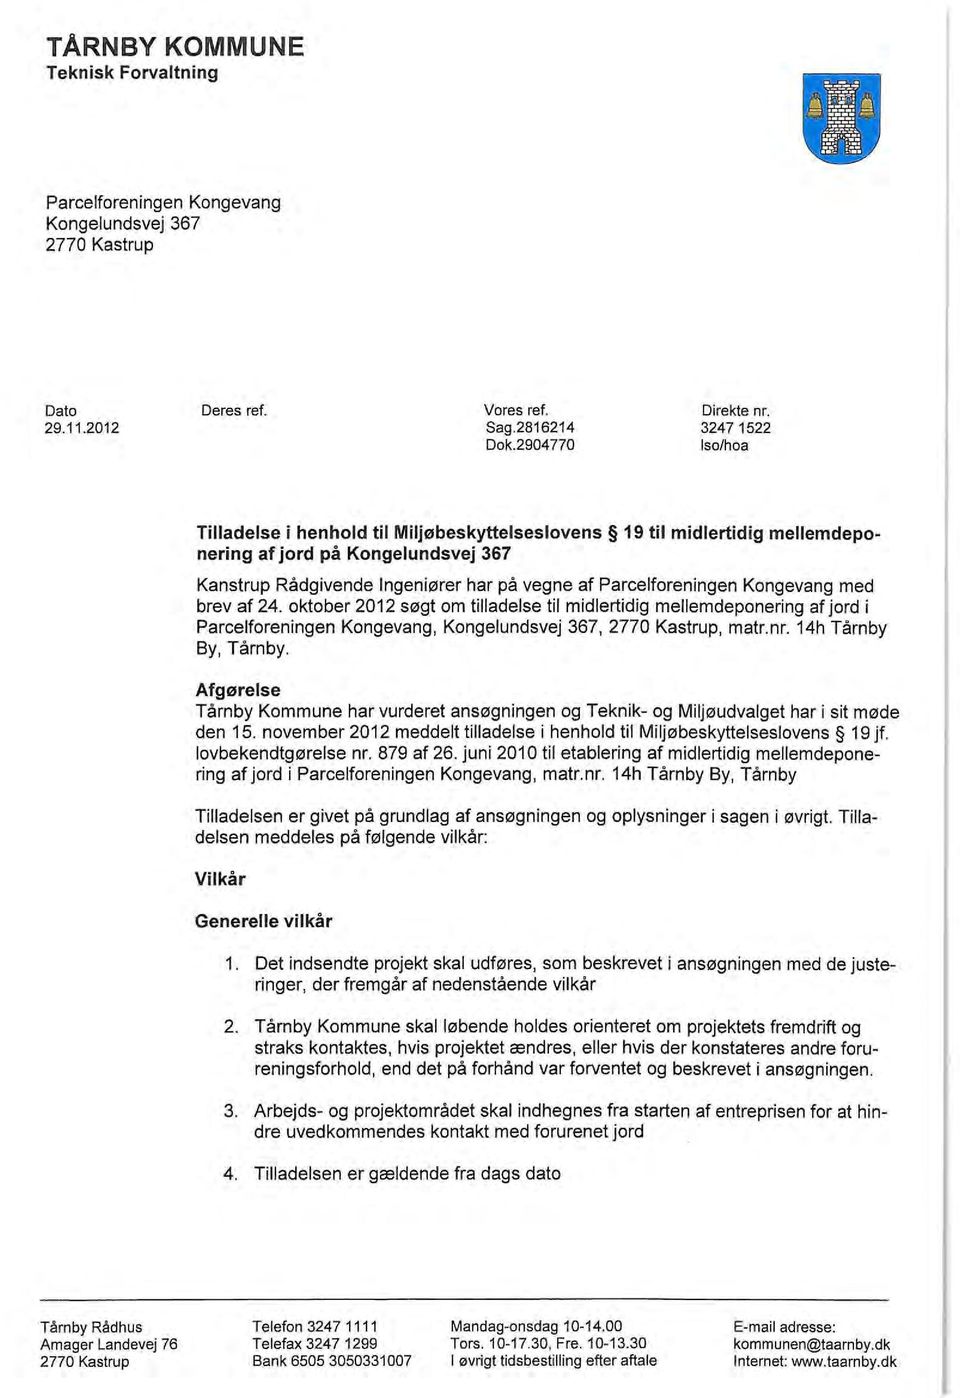 Kongevang med brev af 24. oktober 2012 søgt om tilladelse til midlertidig mellemdeponering af jord i Parcelforeningen Kongevang, Kongelundsvej 367, 2770 Kastrup, matr.nr. 14h Tårnby By, Tårnby.